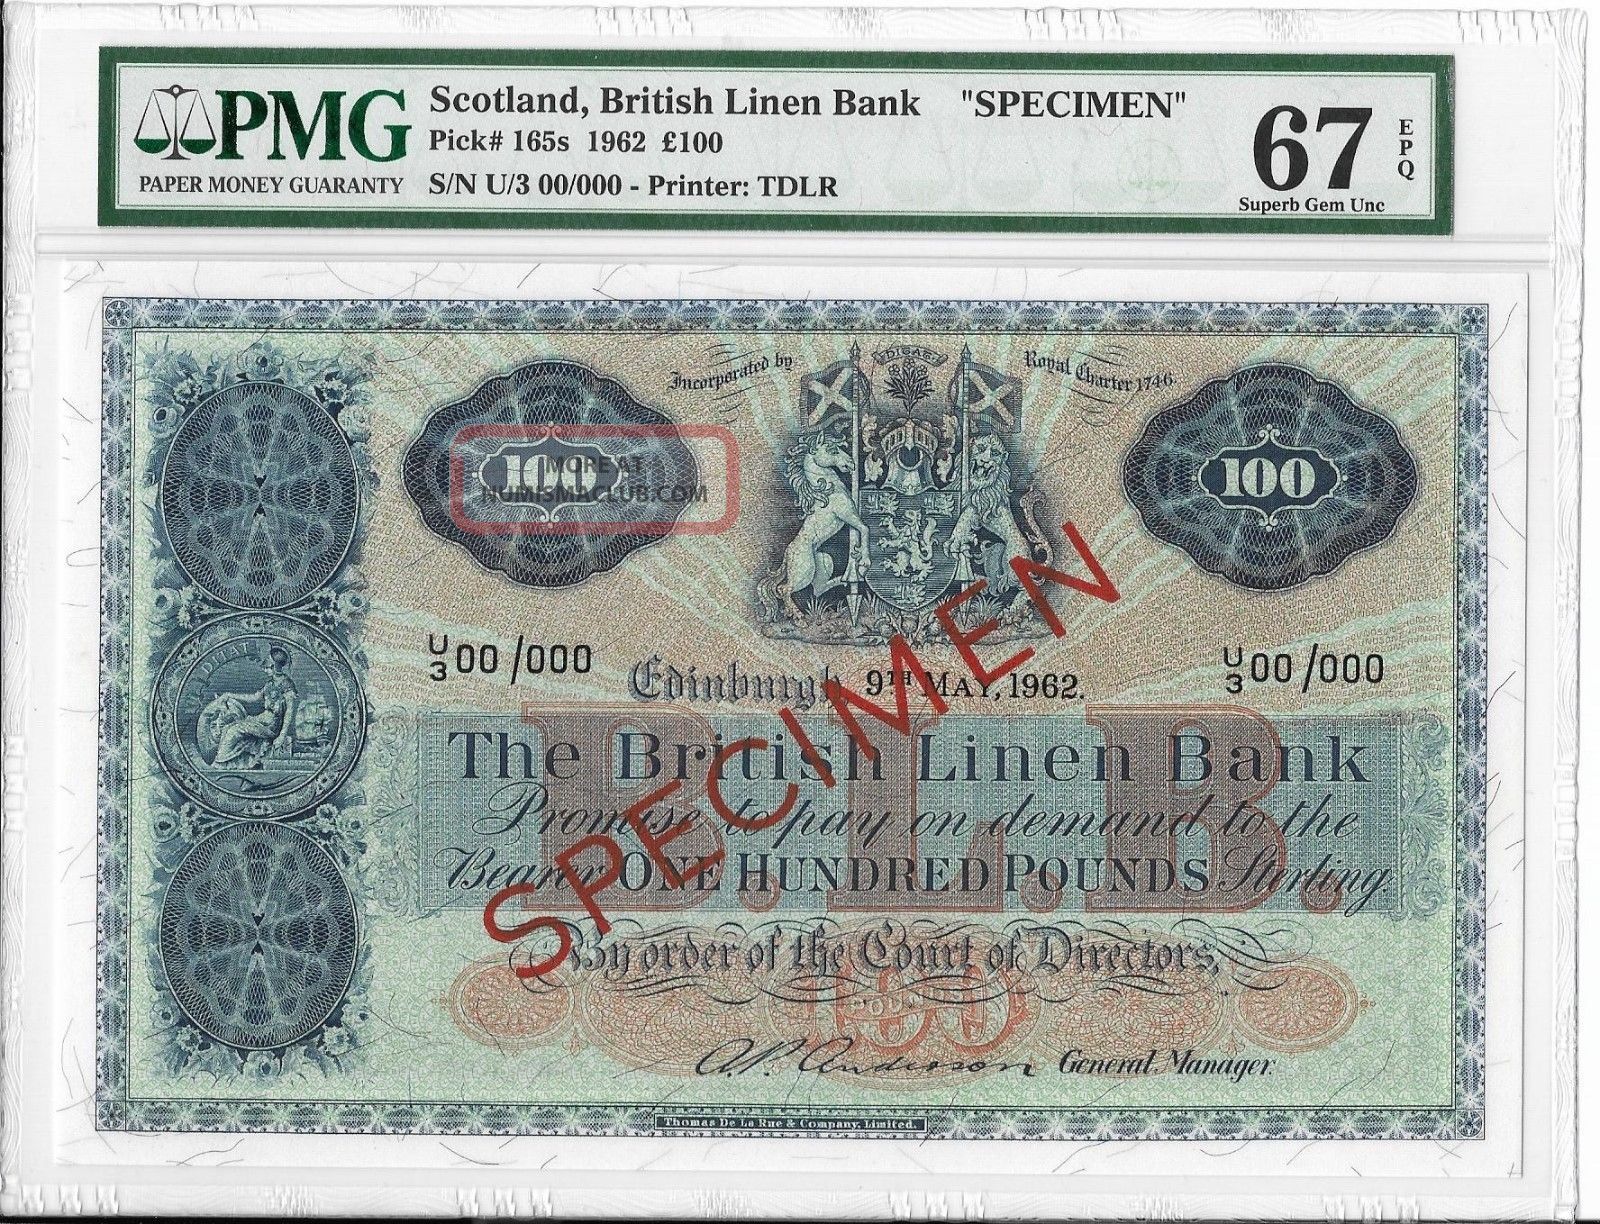 Scotland, British Linen Bank - 100 Pounds, 1962. Specimen. Pmg 67epq. Rare.